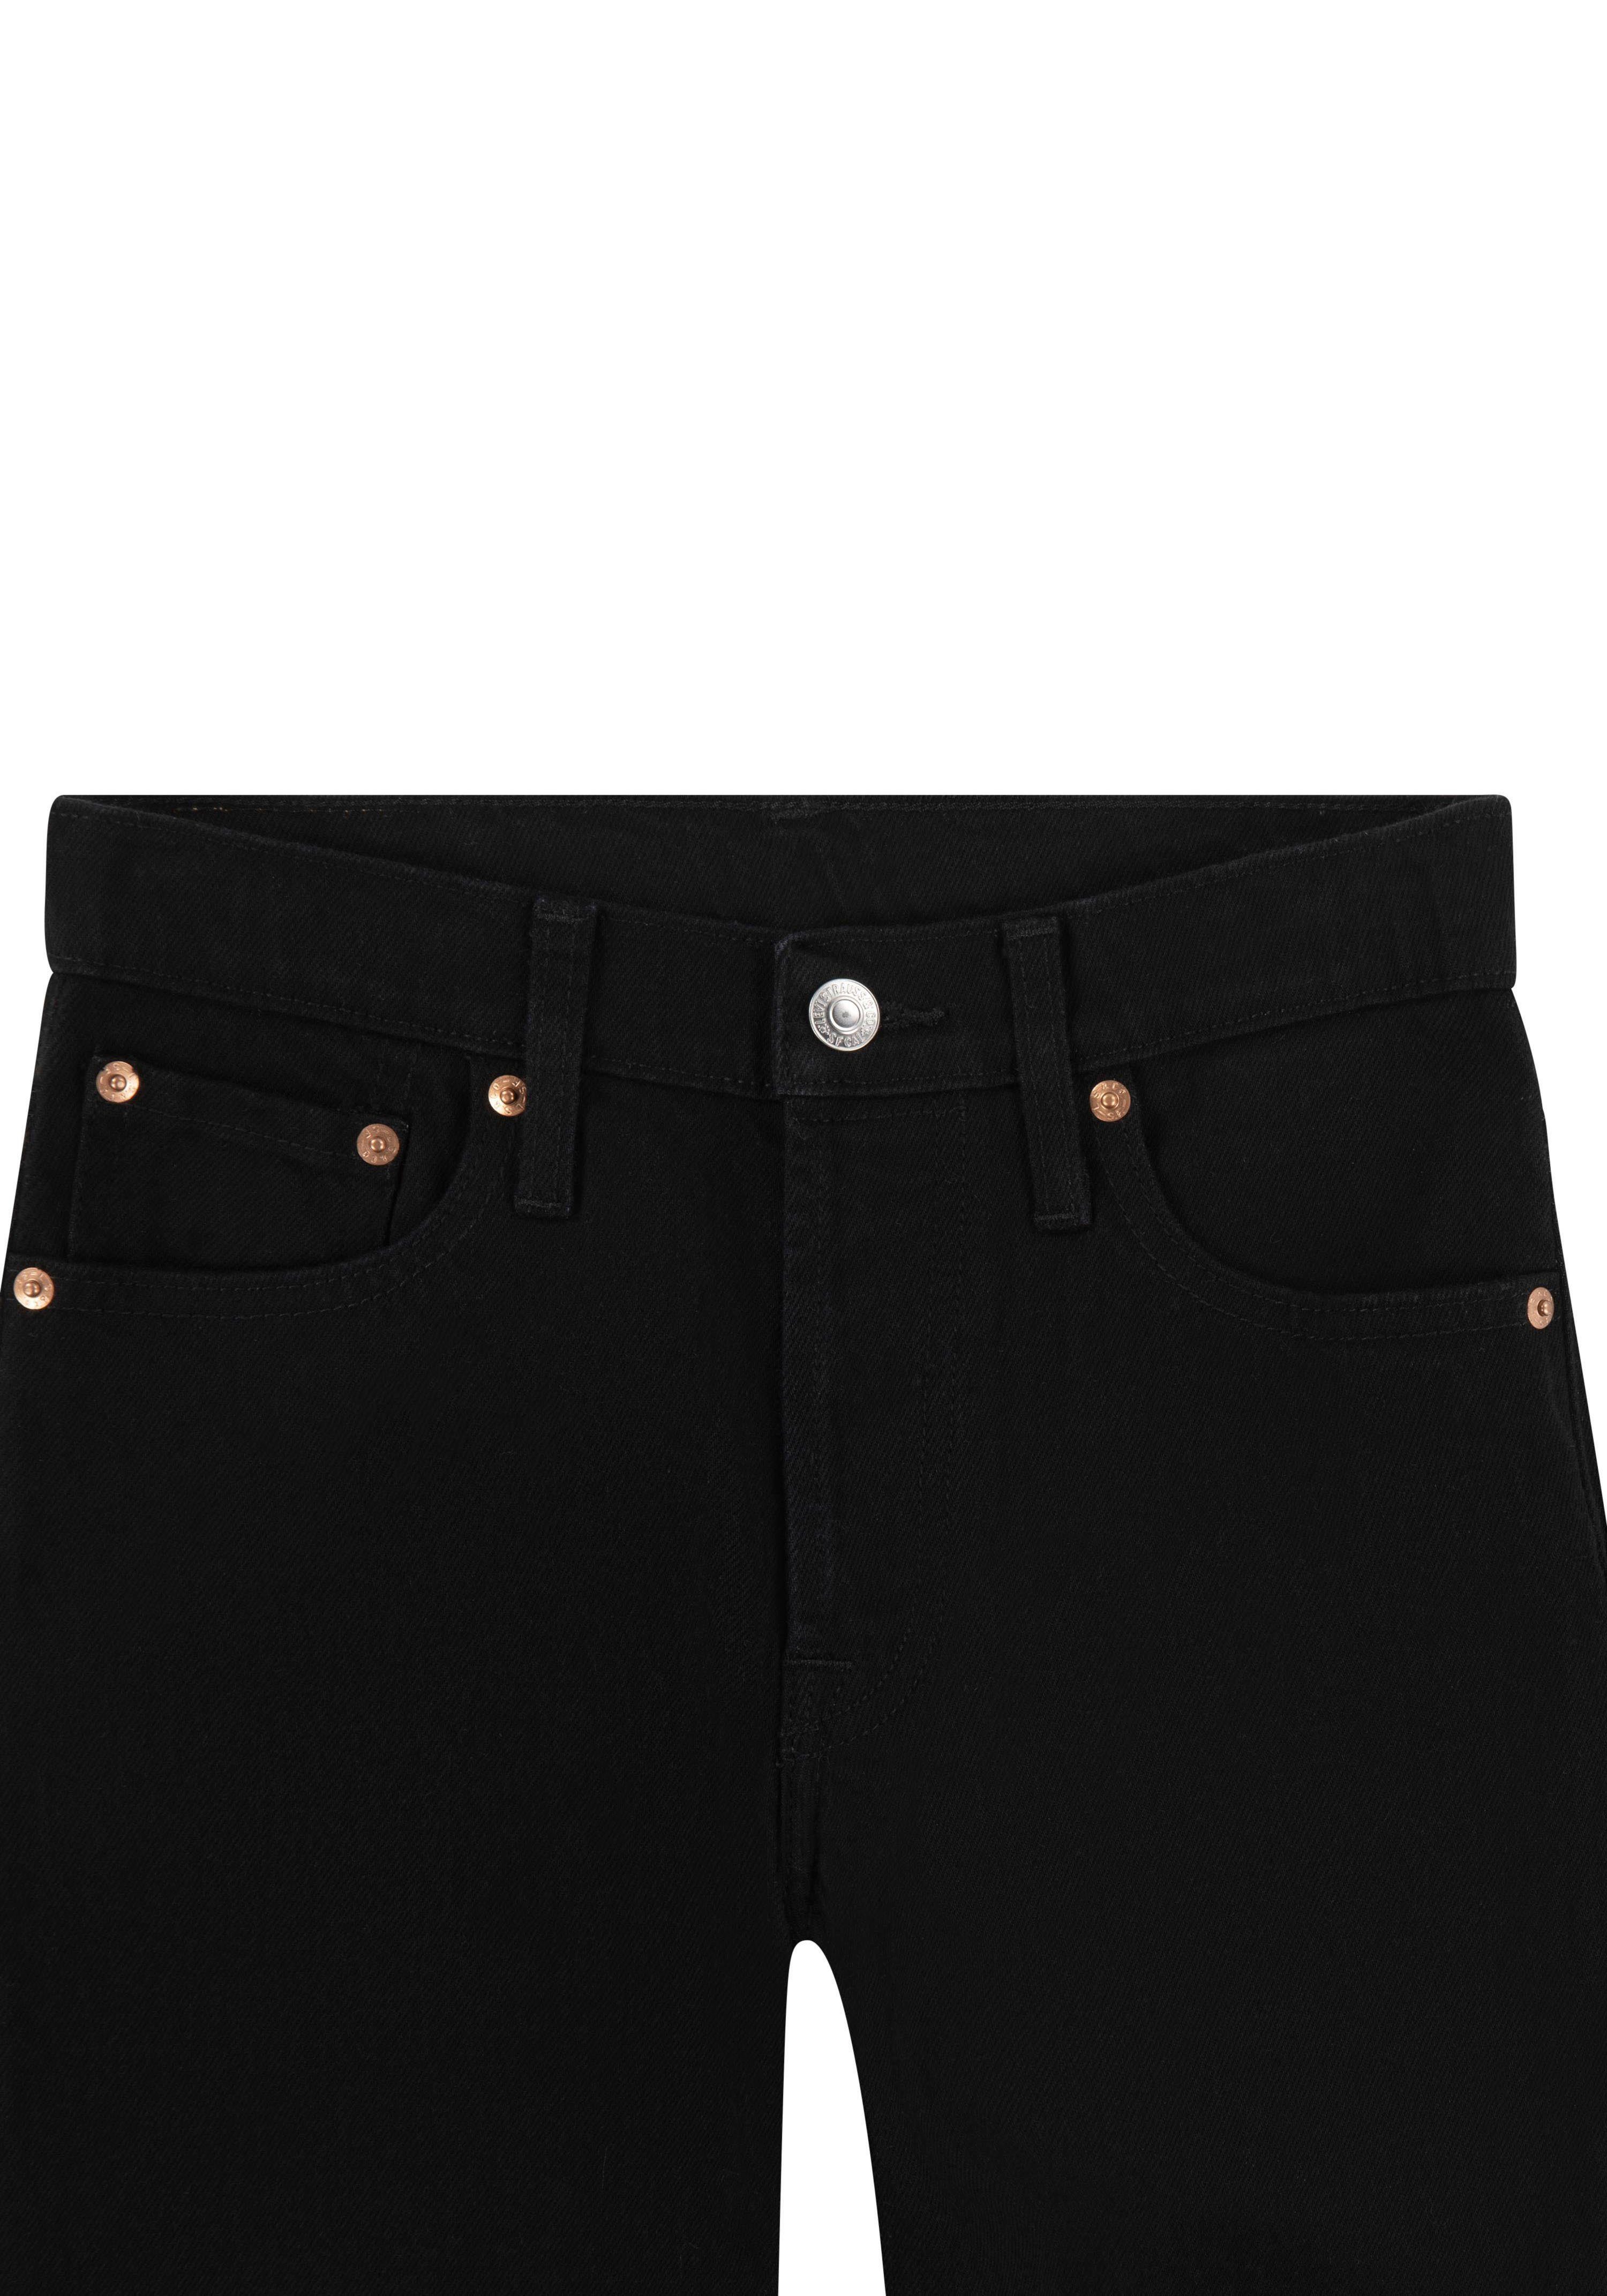 BOYS Kids JEANS black ORIGINAL 5-Pocket-Jeans for 501 Levi's®